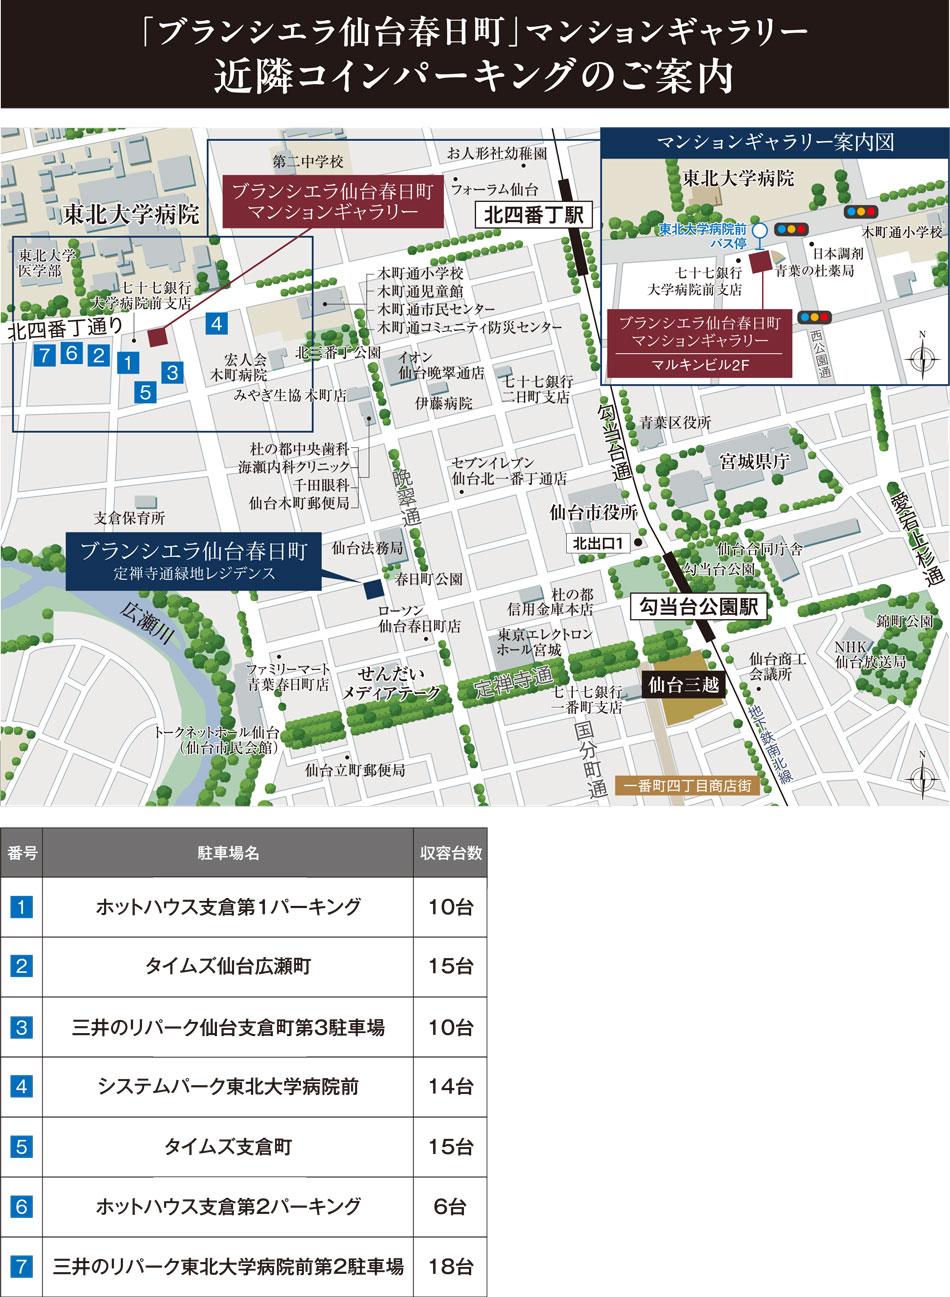 ブランシエラ仙台春日町（定禅寺通緑地レジデンス）のモデルルーム案内図